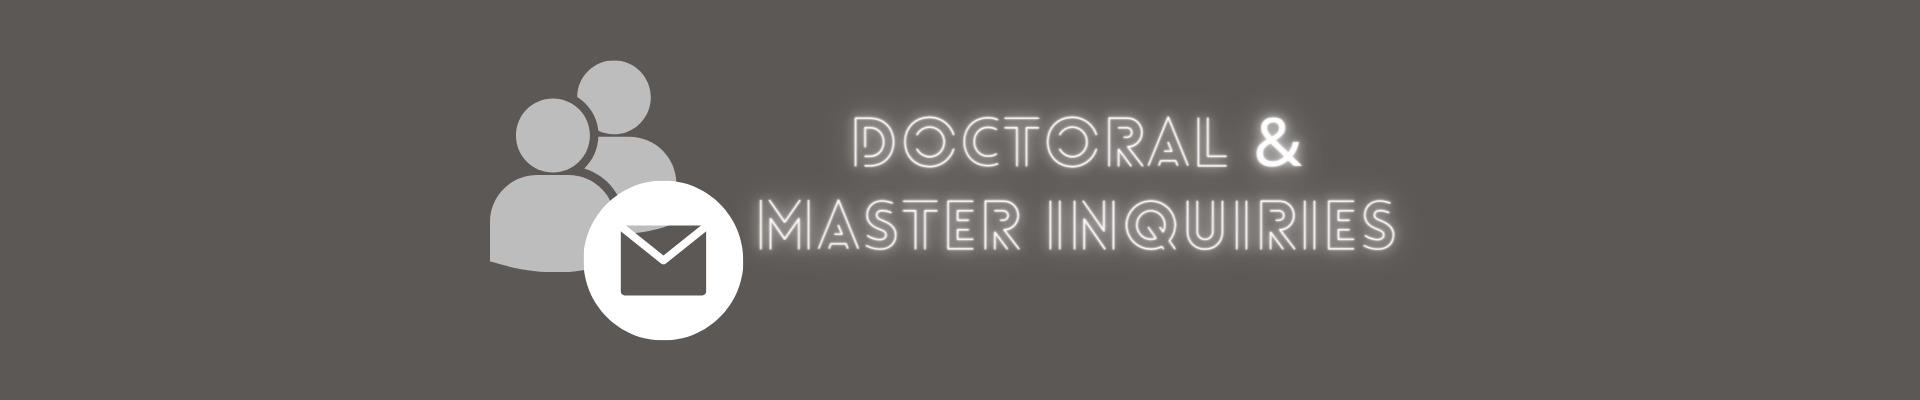 Doctoral & Master Inquiries